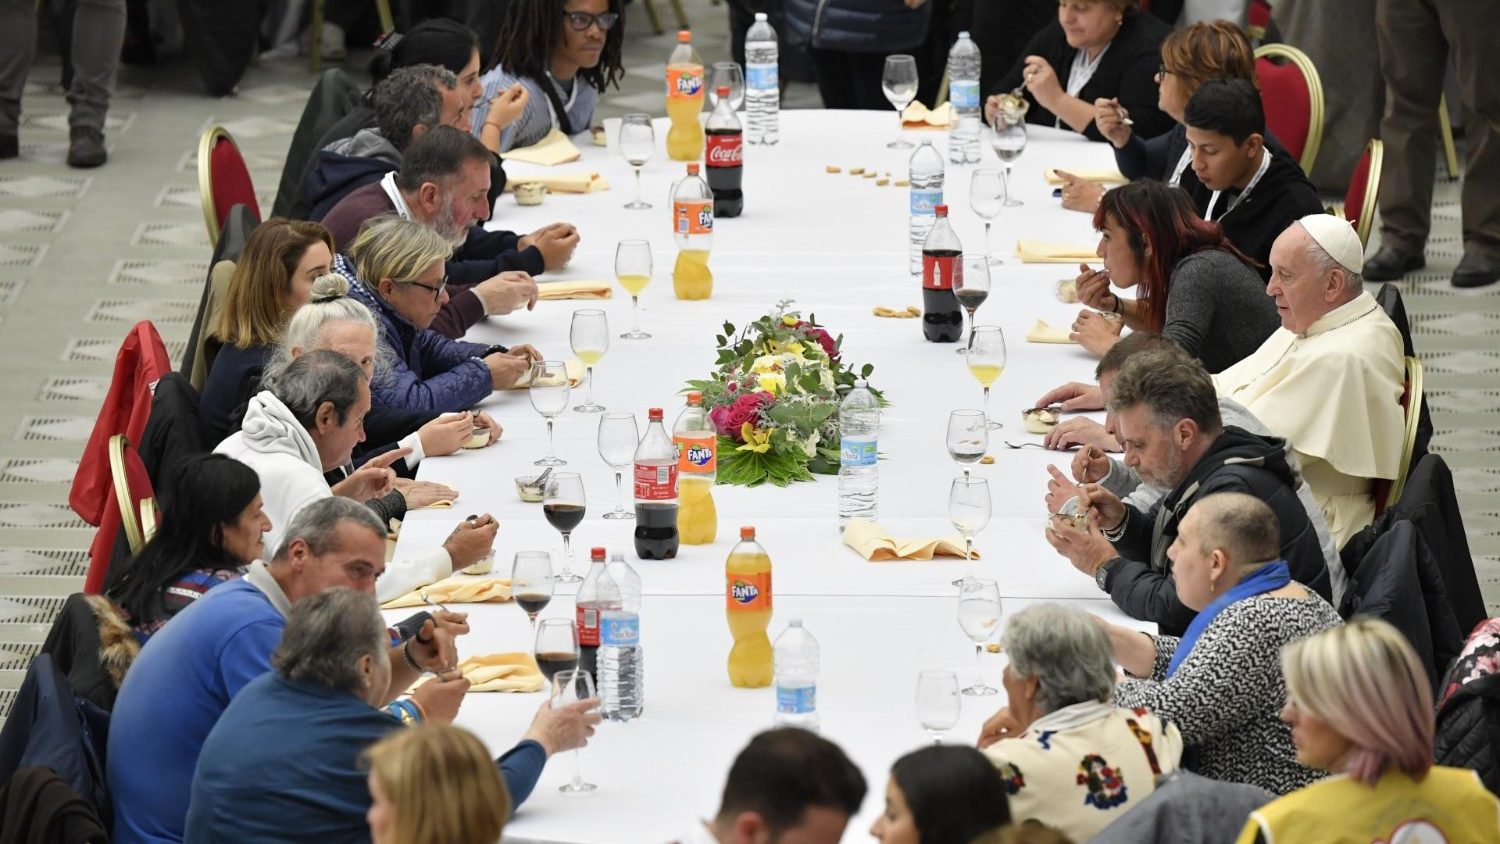 Déjeuner avec 1500 pauvres, 17 novembre 2019 © Vatican Media